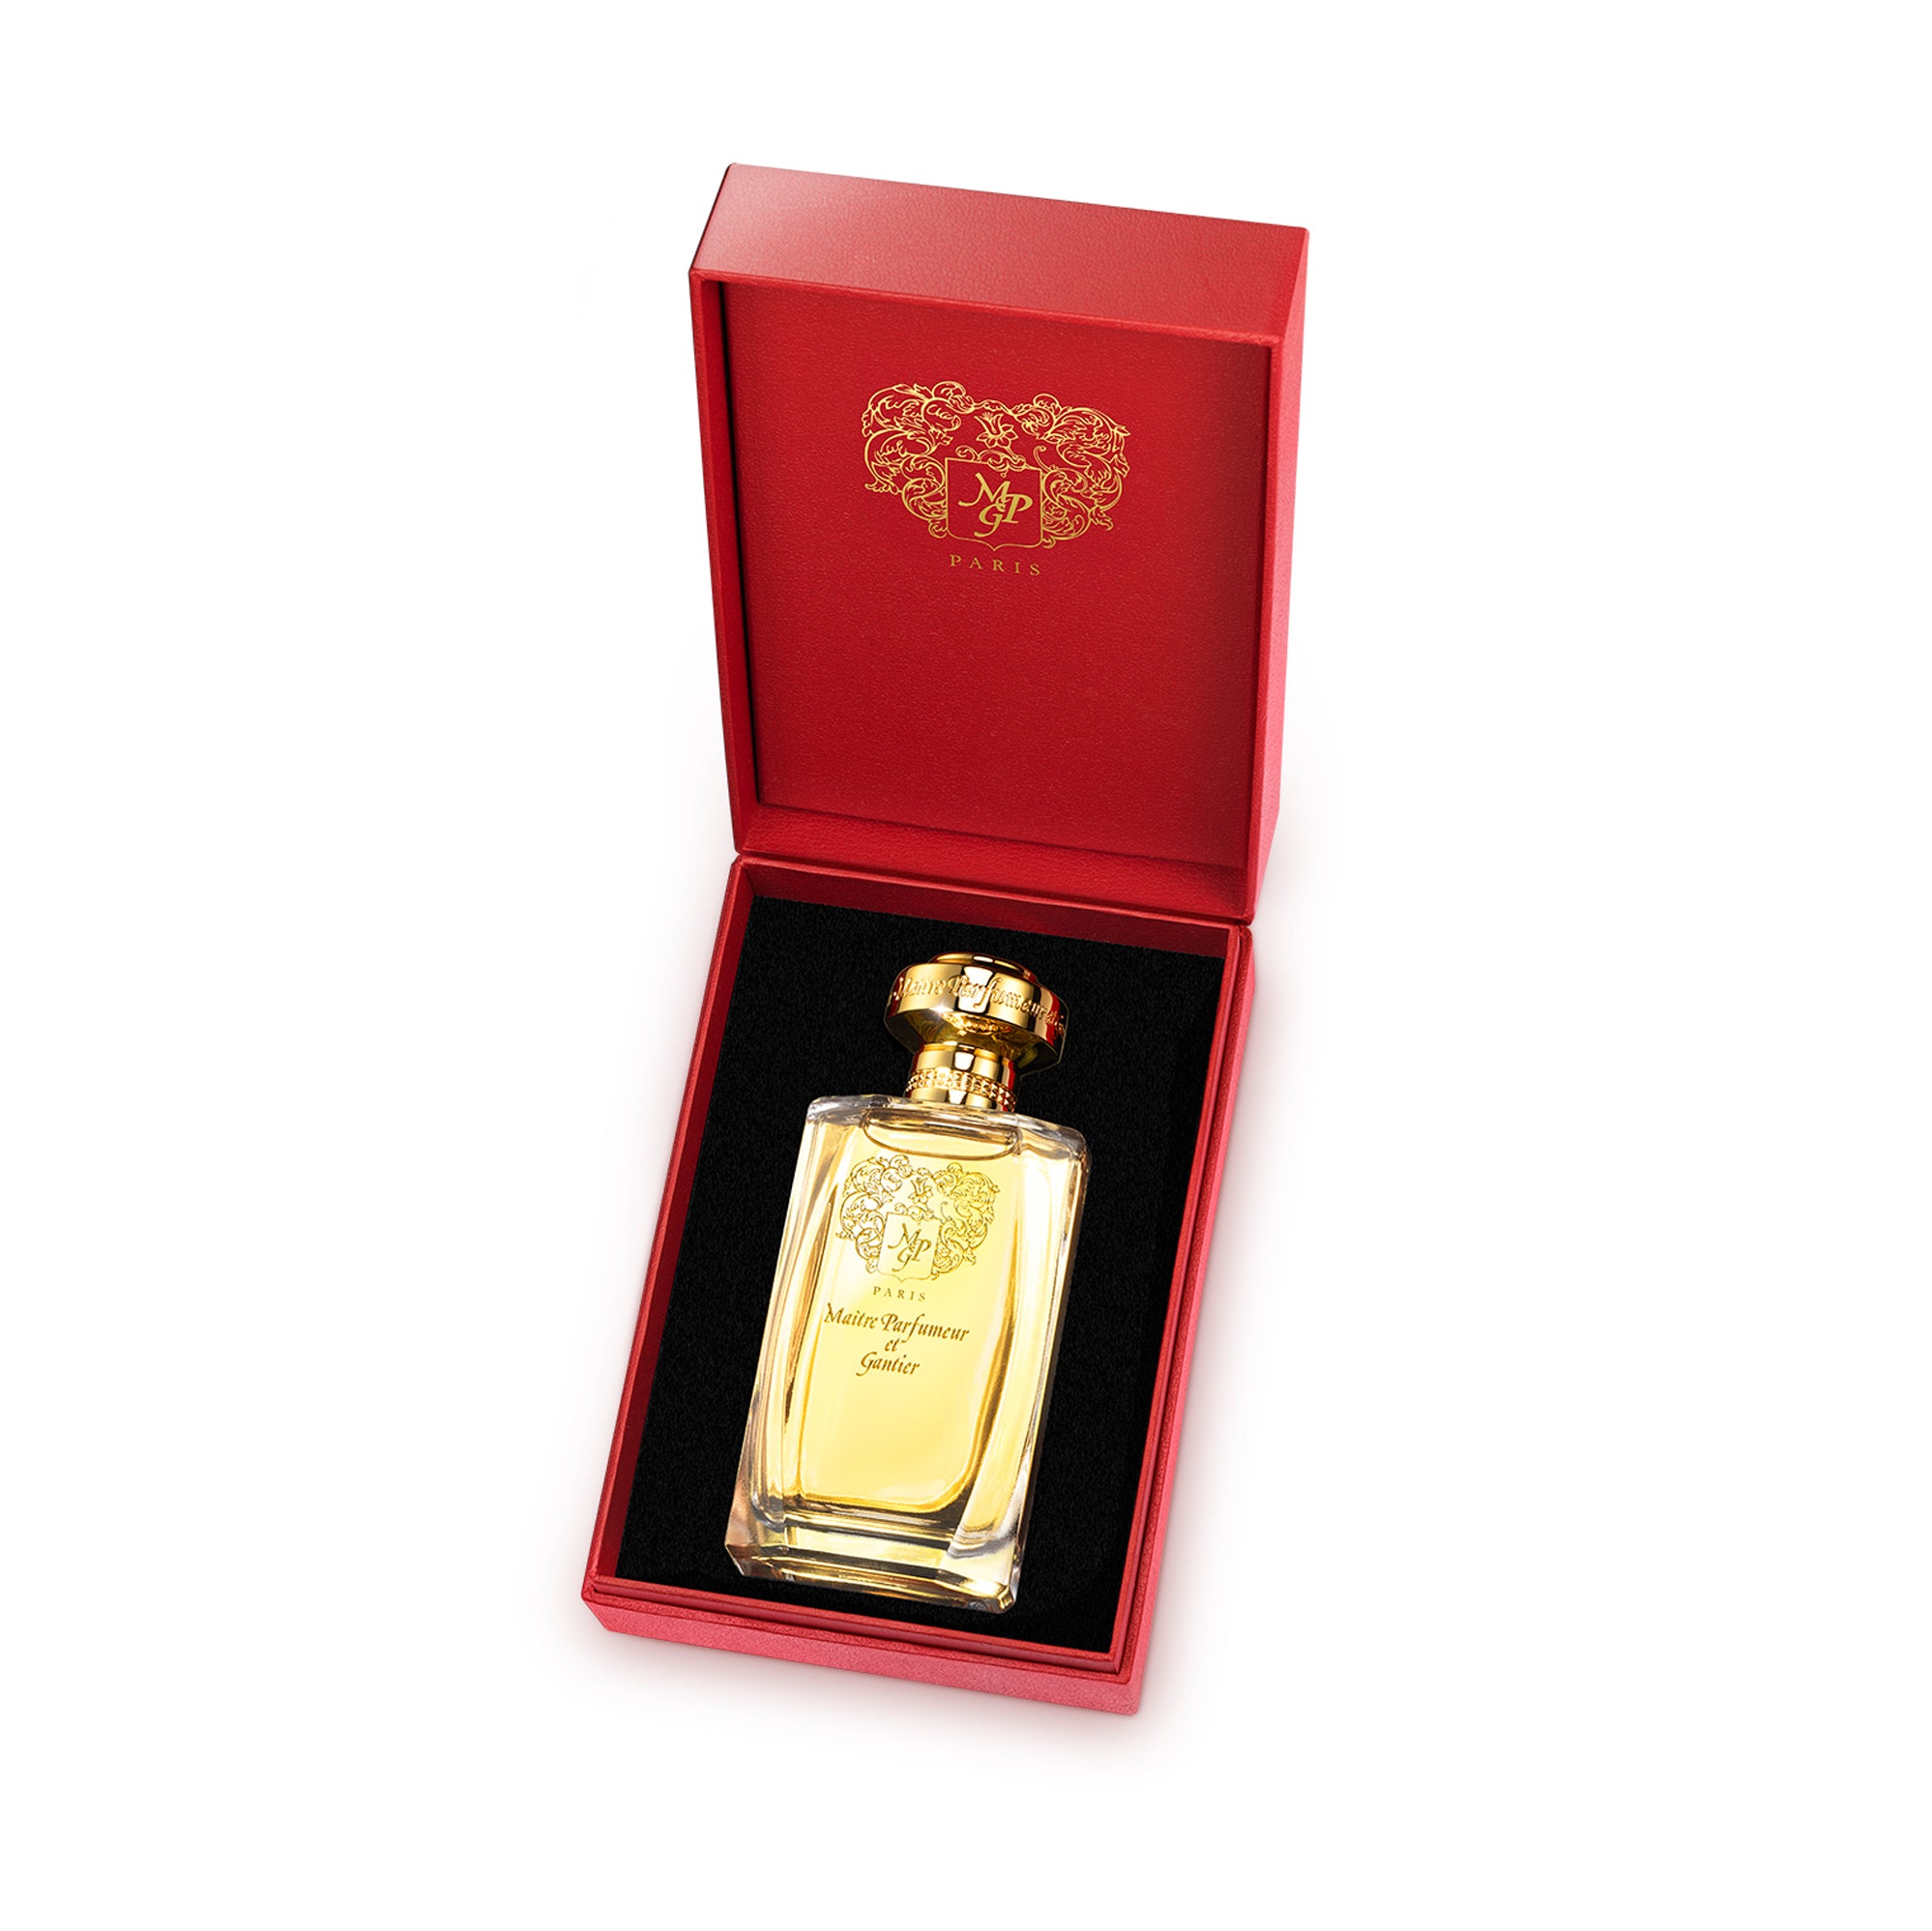 Parfum D'Habit Eau de Parfum 120ml Bottle by MAÎTRE PARFUMEUR ET GANTIER in Presentation Box.